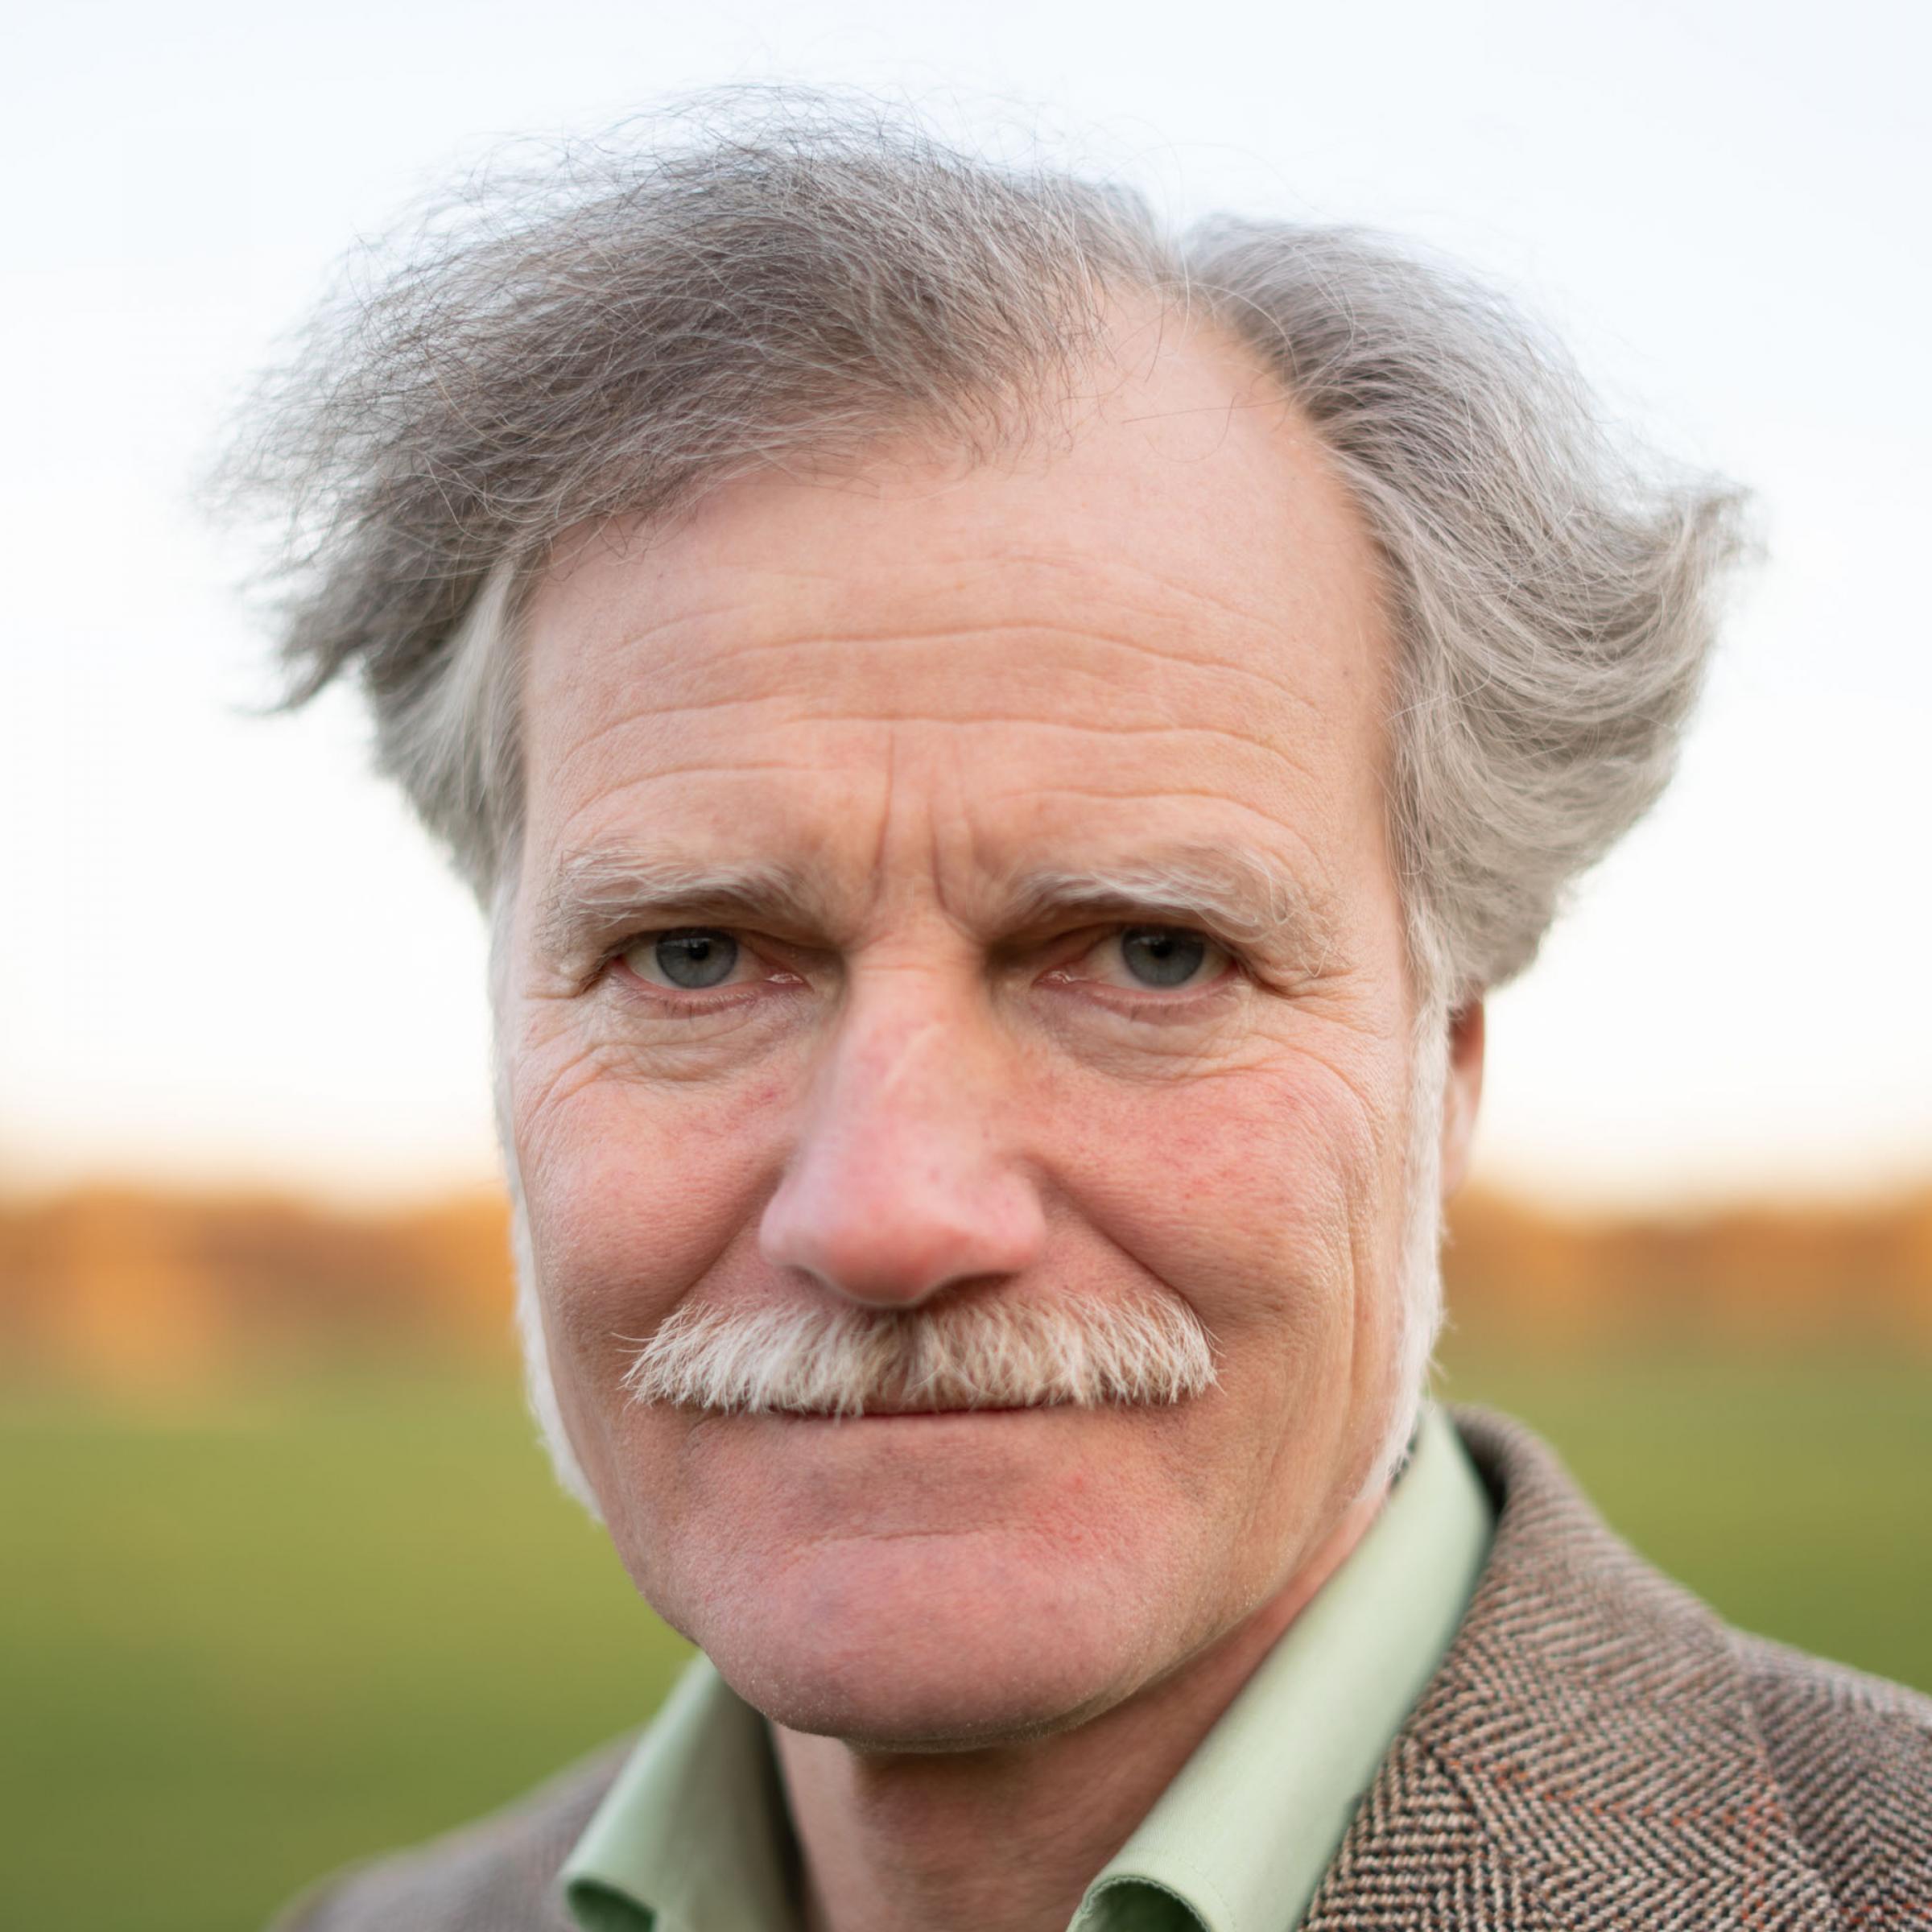 Der Field-Writer Gerhard Richter trägt eine grauen Schnurbart und die Haare als Seitenscheitel. Er trägt außerdem ein hellgrünes Hemd und darüber ein braunes Tweed-Sacko.